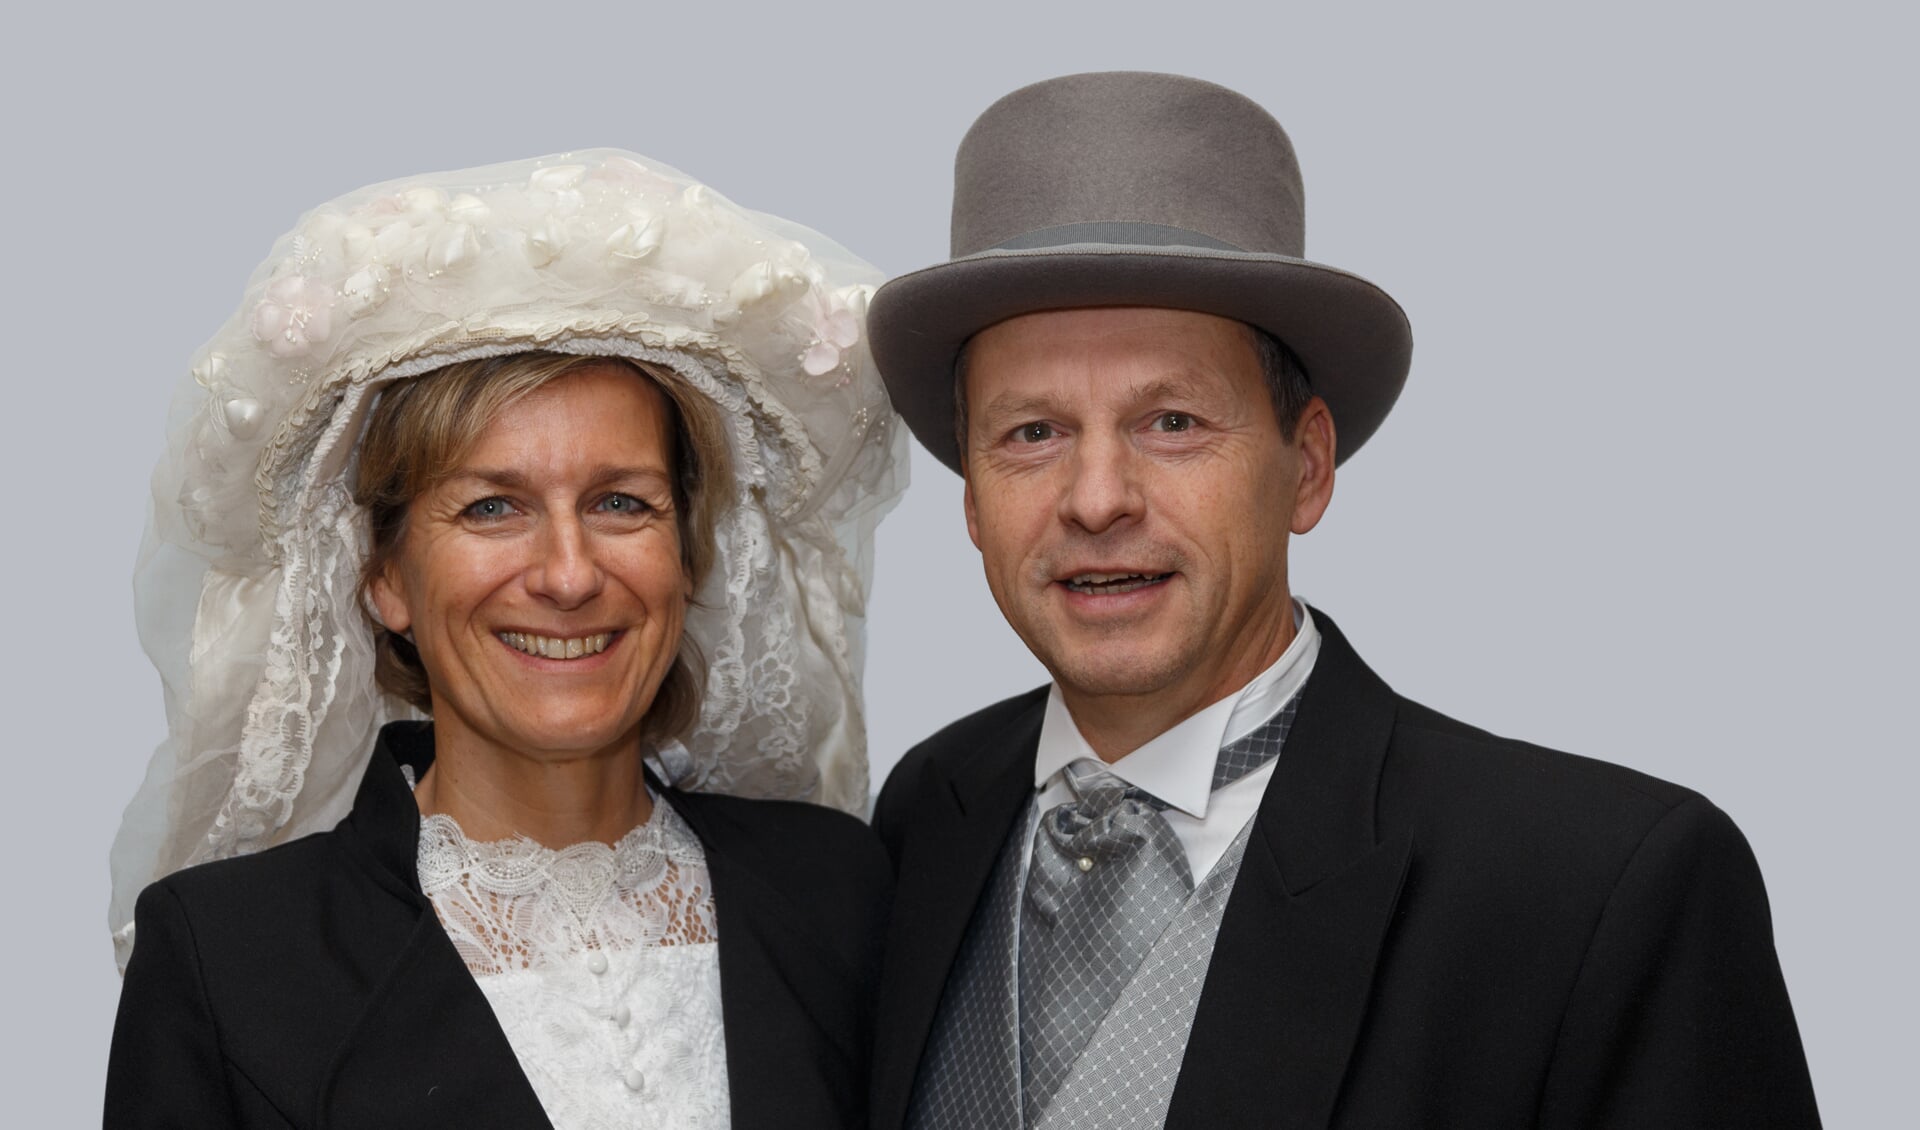 Rinio en Jacqueline van de Ven zijn het nieuwe boerenbruidspaar van CV De Schaopenwaesers